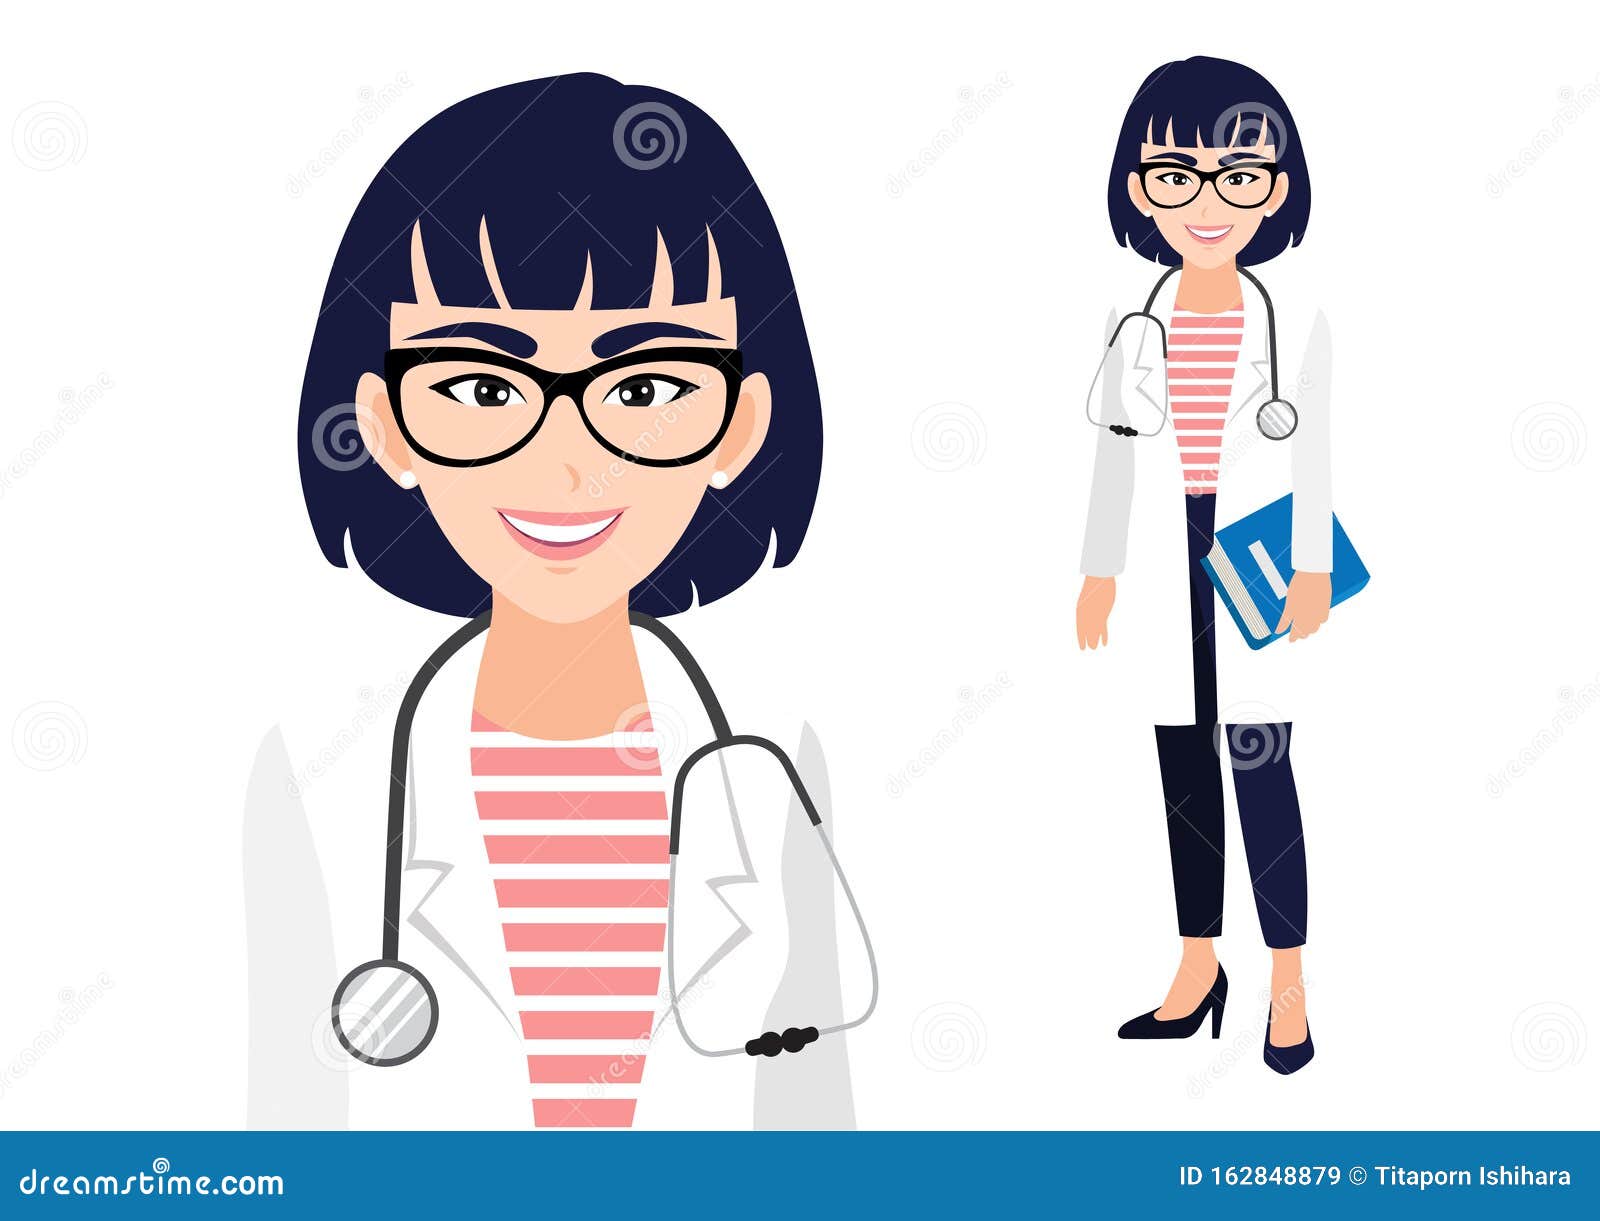 personagem de desenho animado de mulher médica 5400017 Vetor no Vecteezy